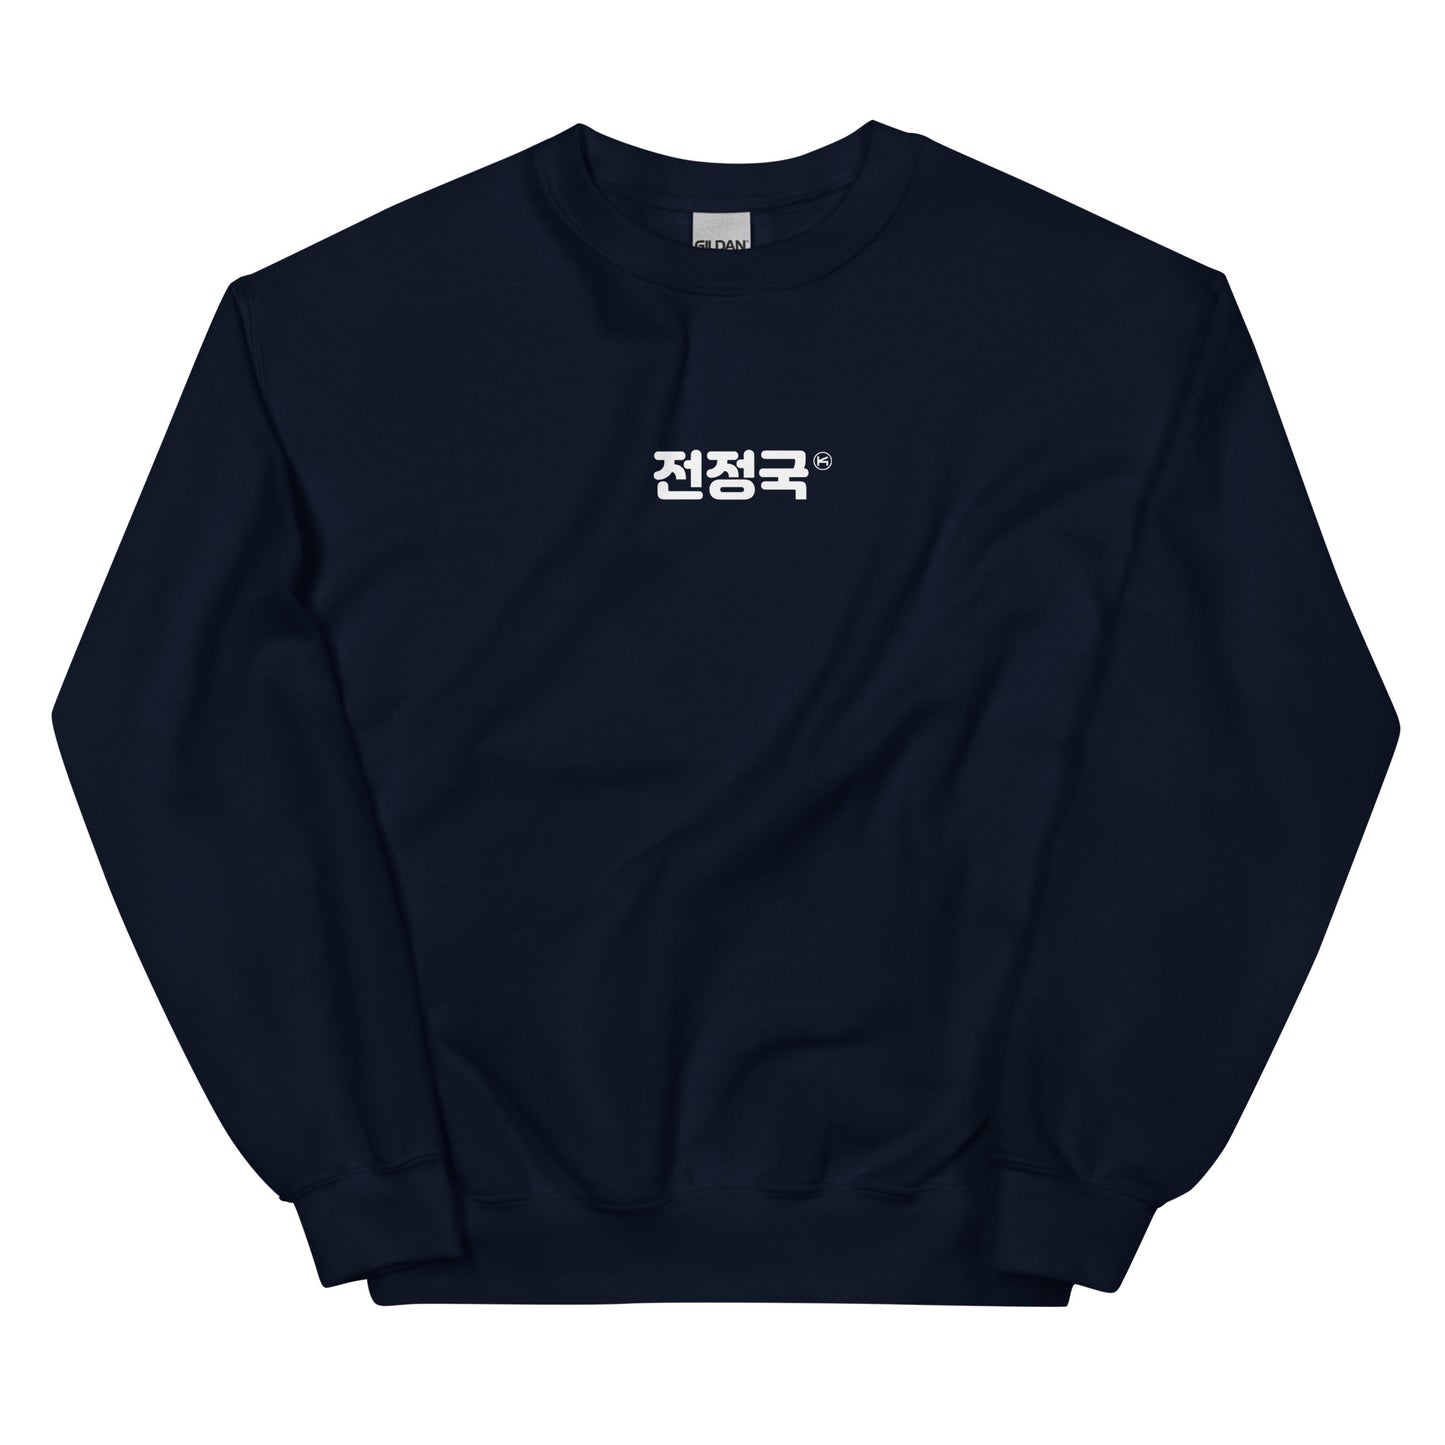 Jungkook, Jeon Jung-kook in Korean Hangul Kpop BTS Merch Unisex Sweatshirt